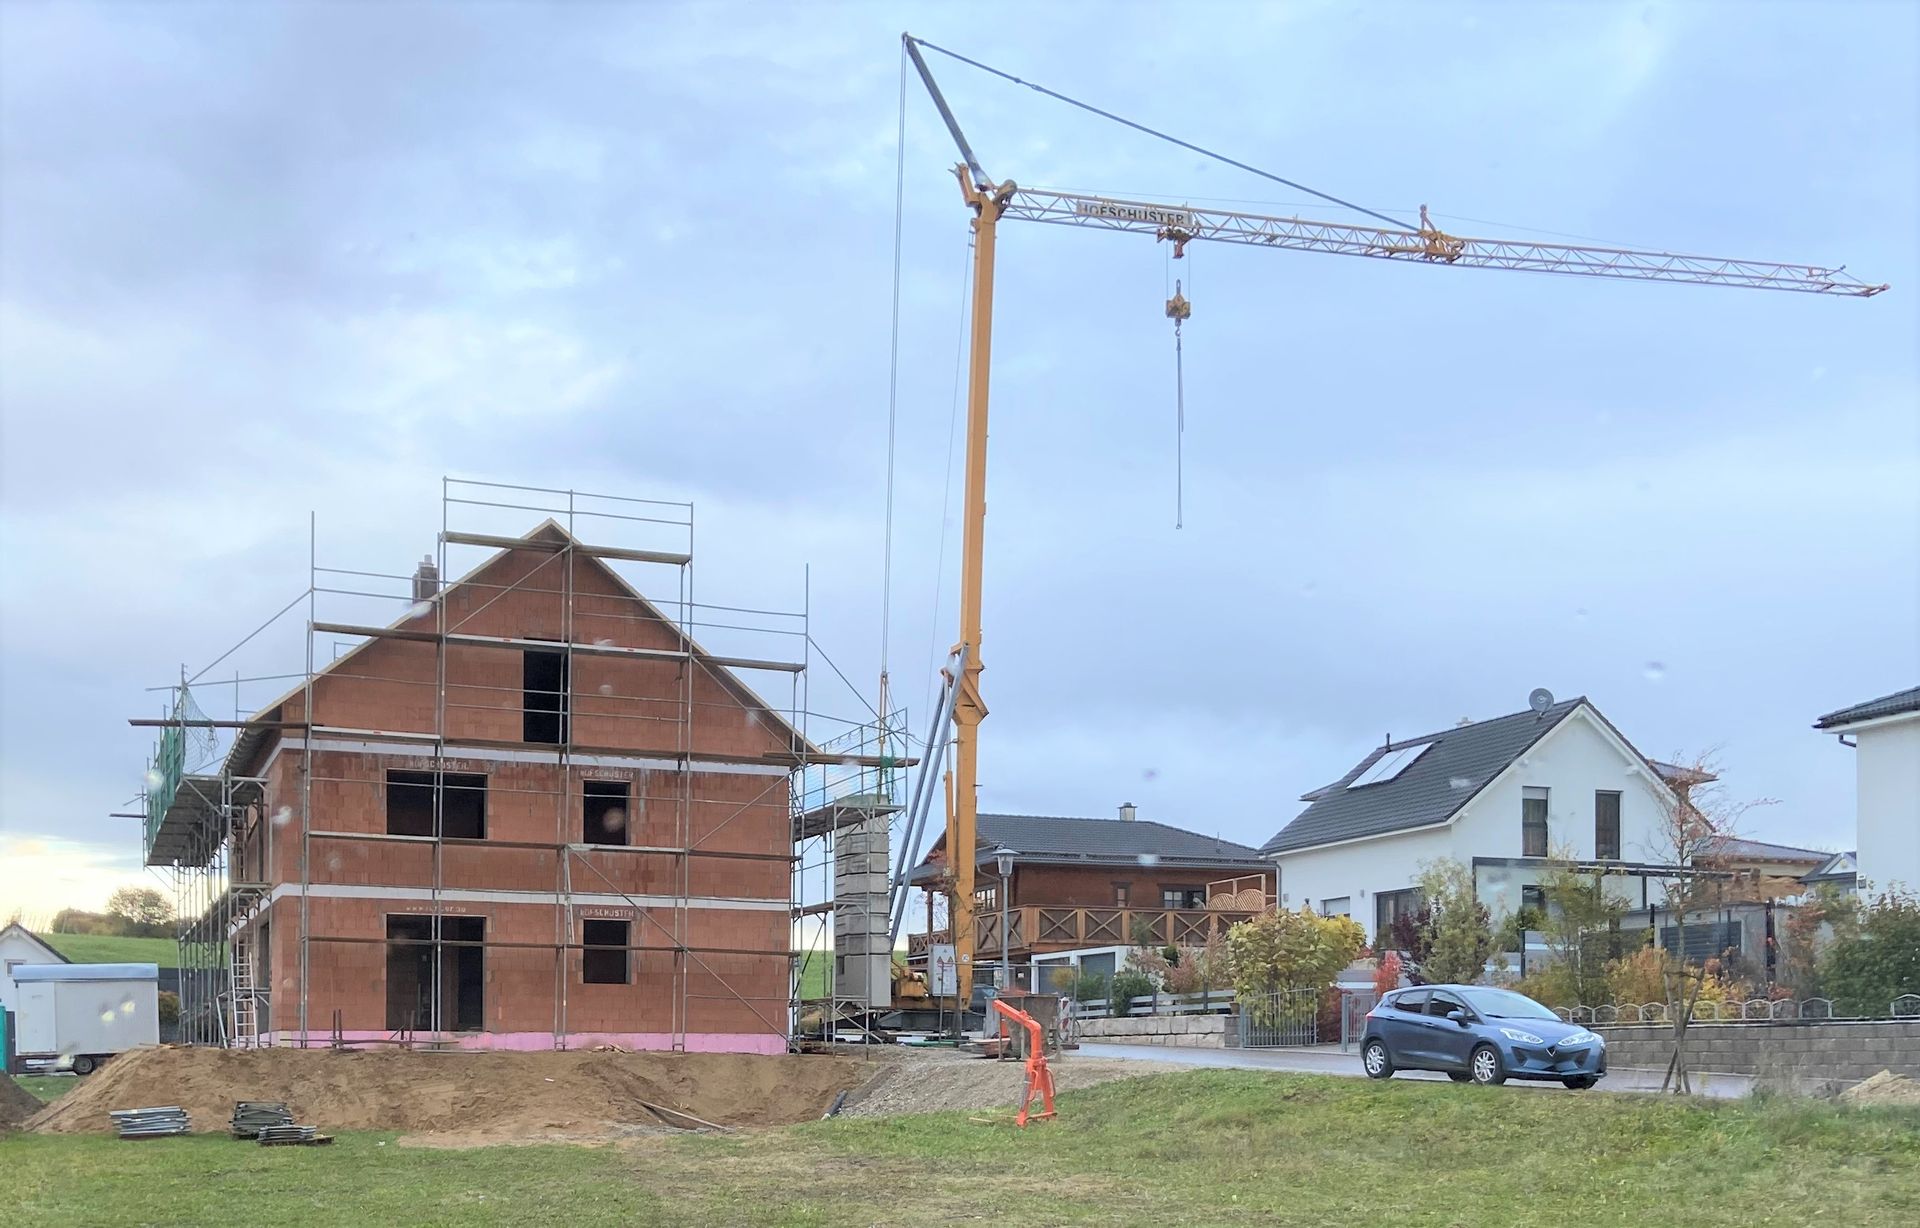 Baustelle der Hofschuster Bauunternehmen GmbH